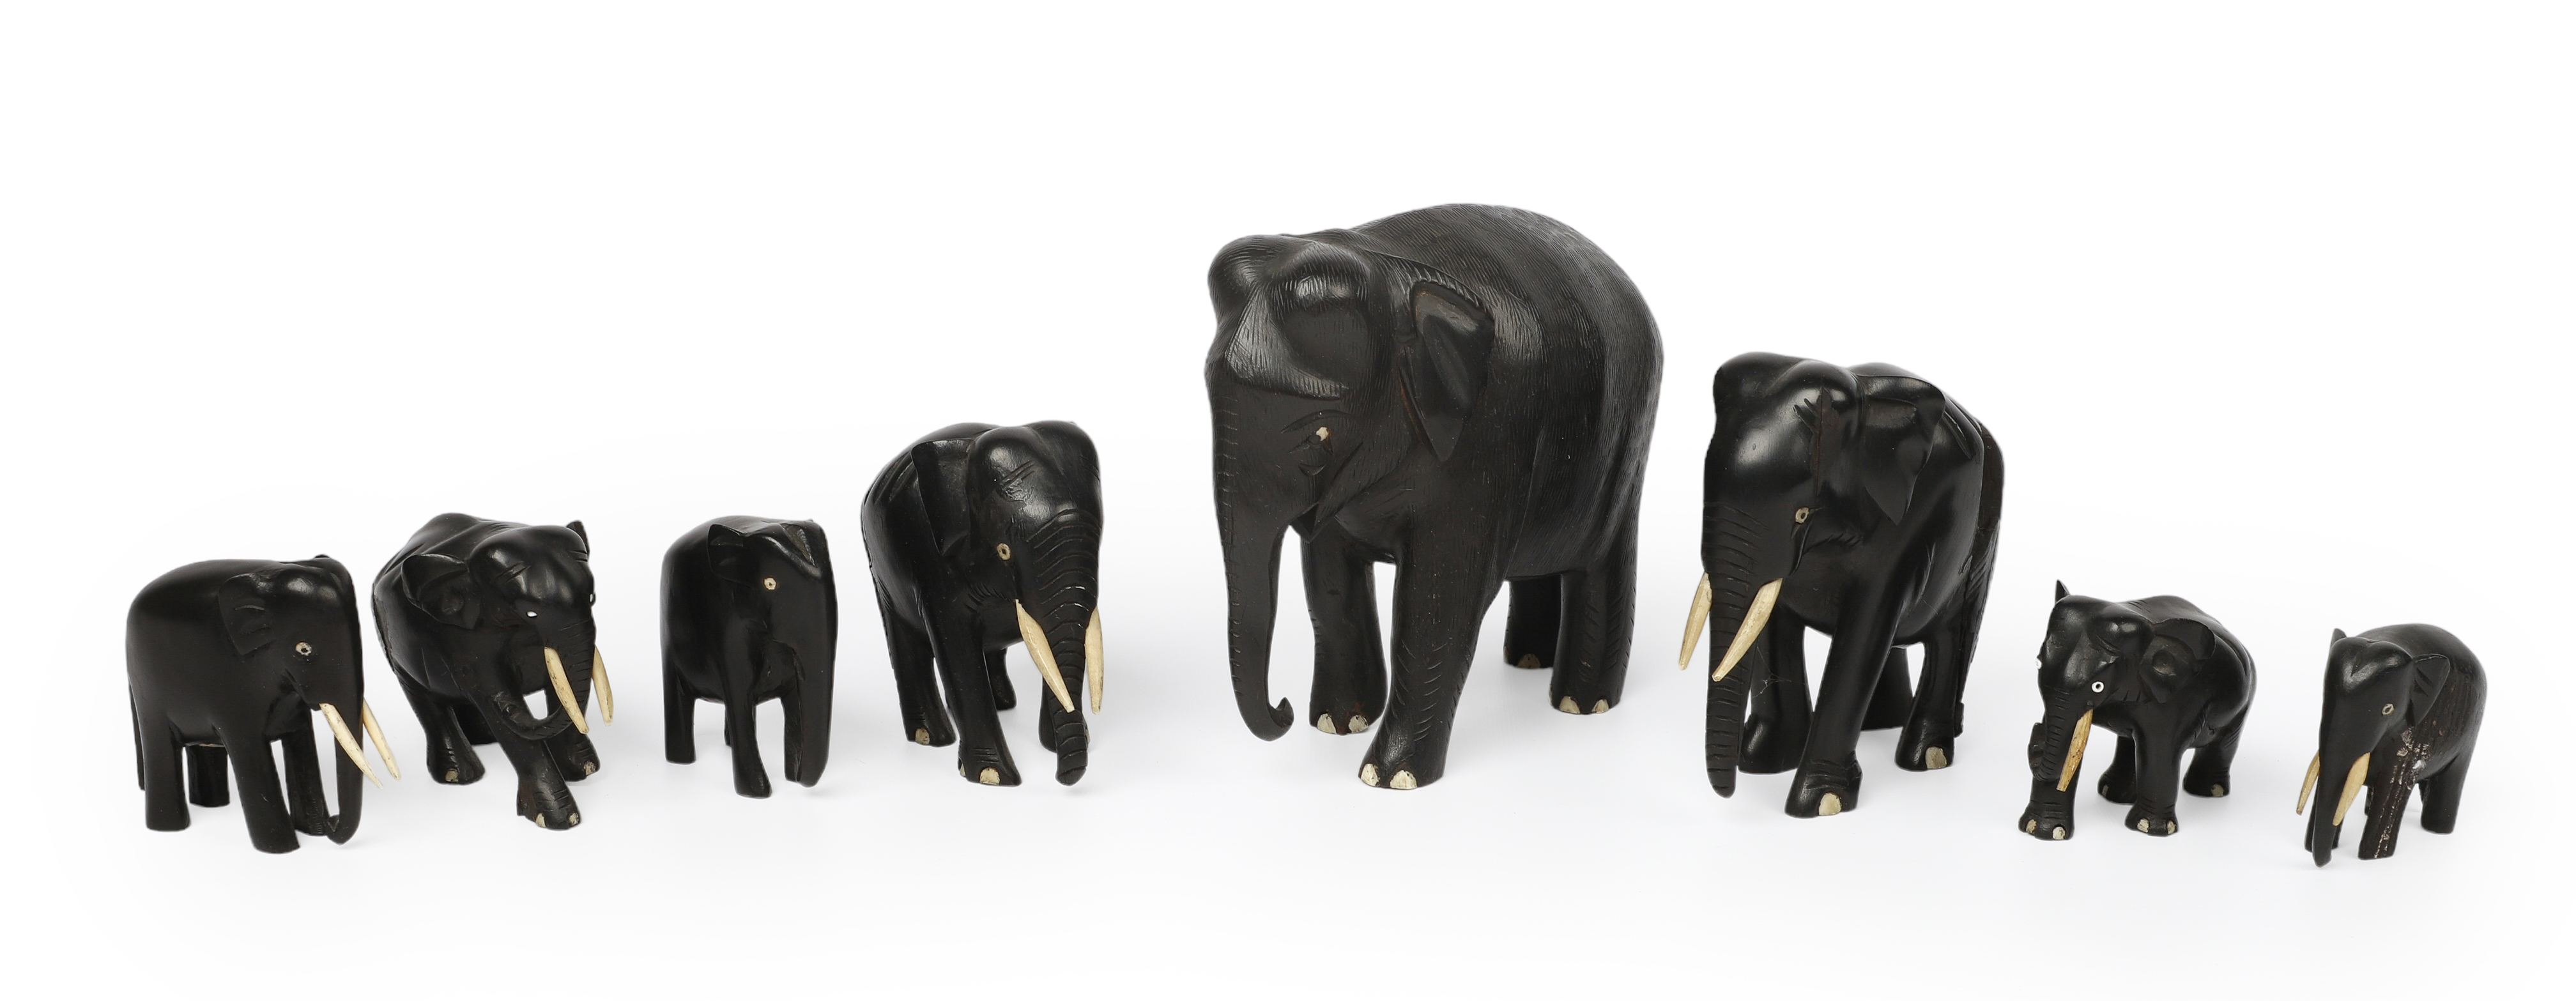 (8) Ebony elephant figurines, bone